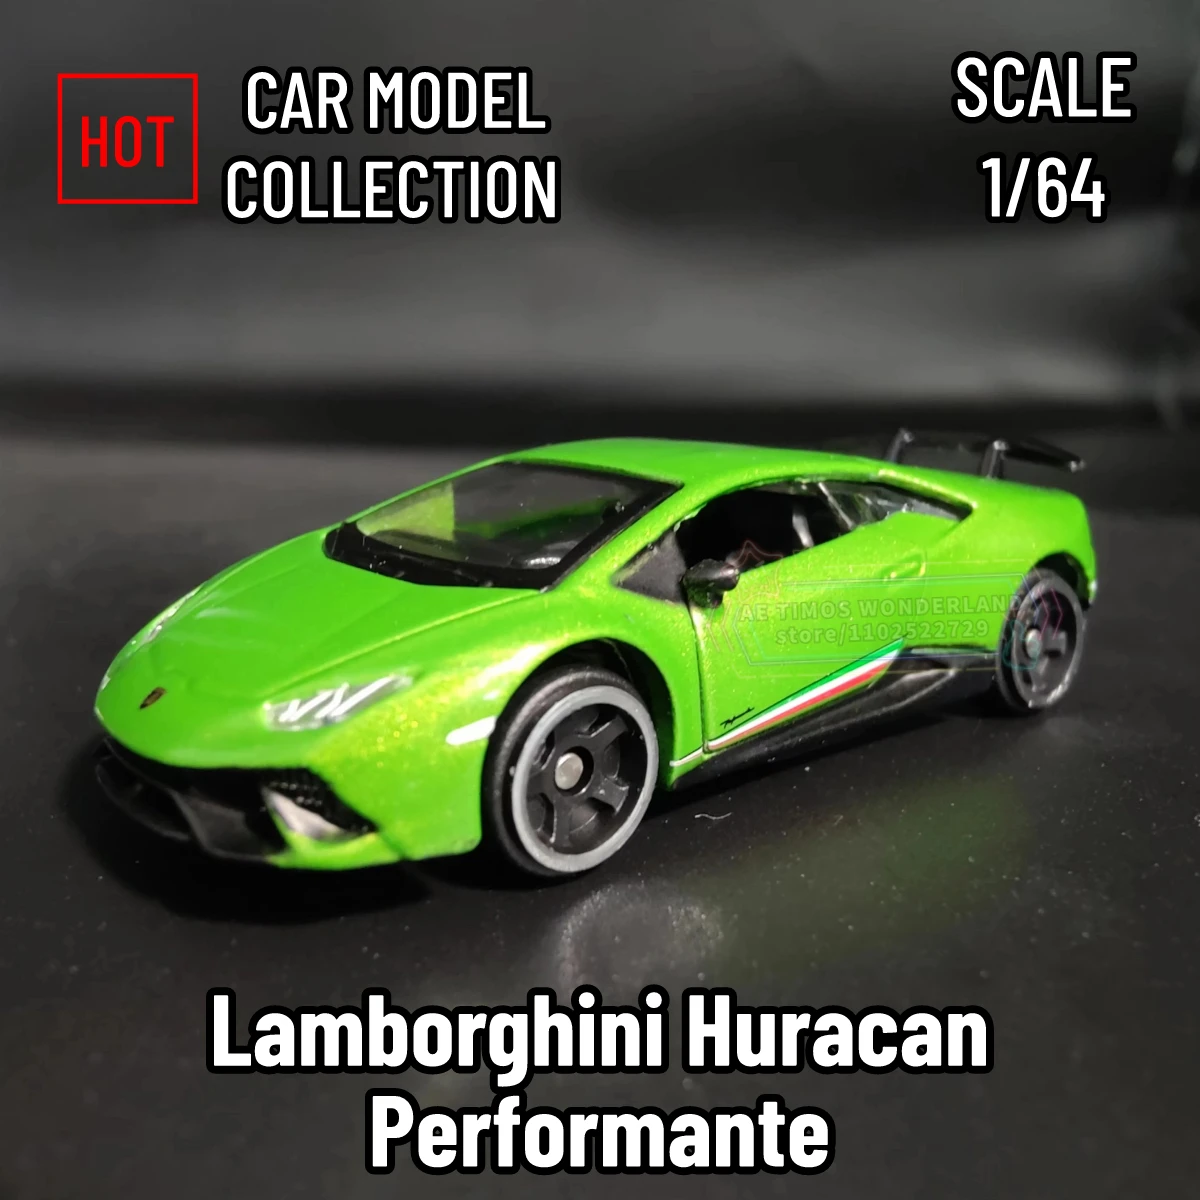 

Bburago 1:64 Lamborghini Huracan Performante Replica Diecast Car Model – Perfect Addition to Your Scale Car Miniature Collection